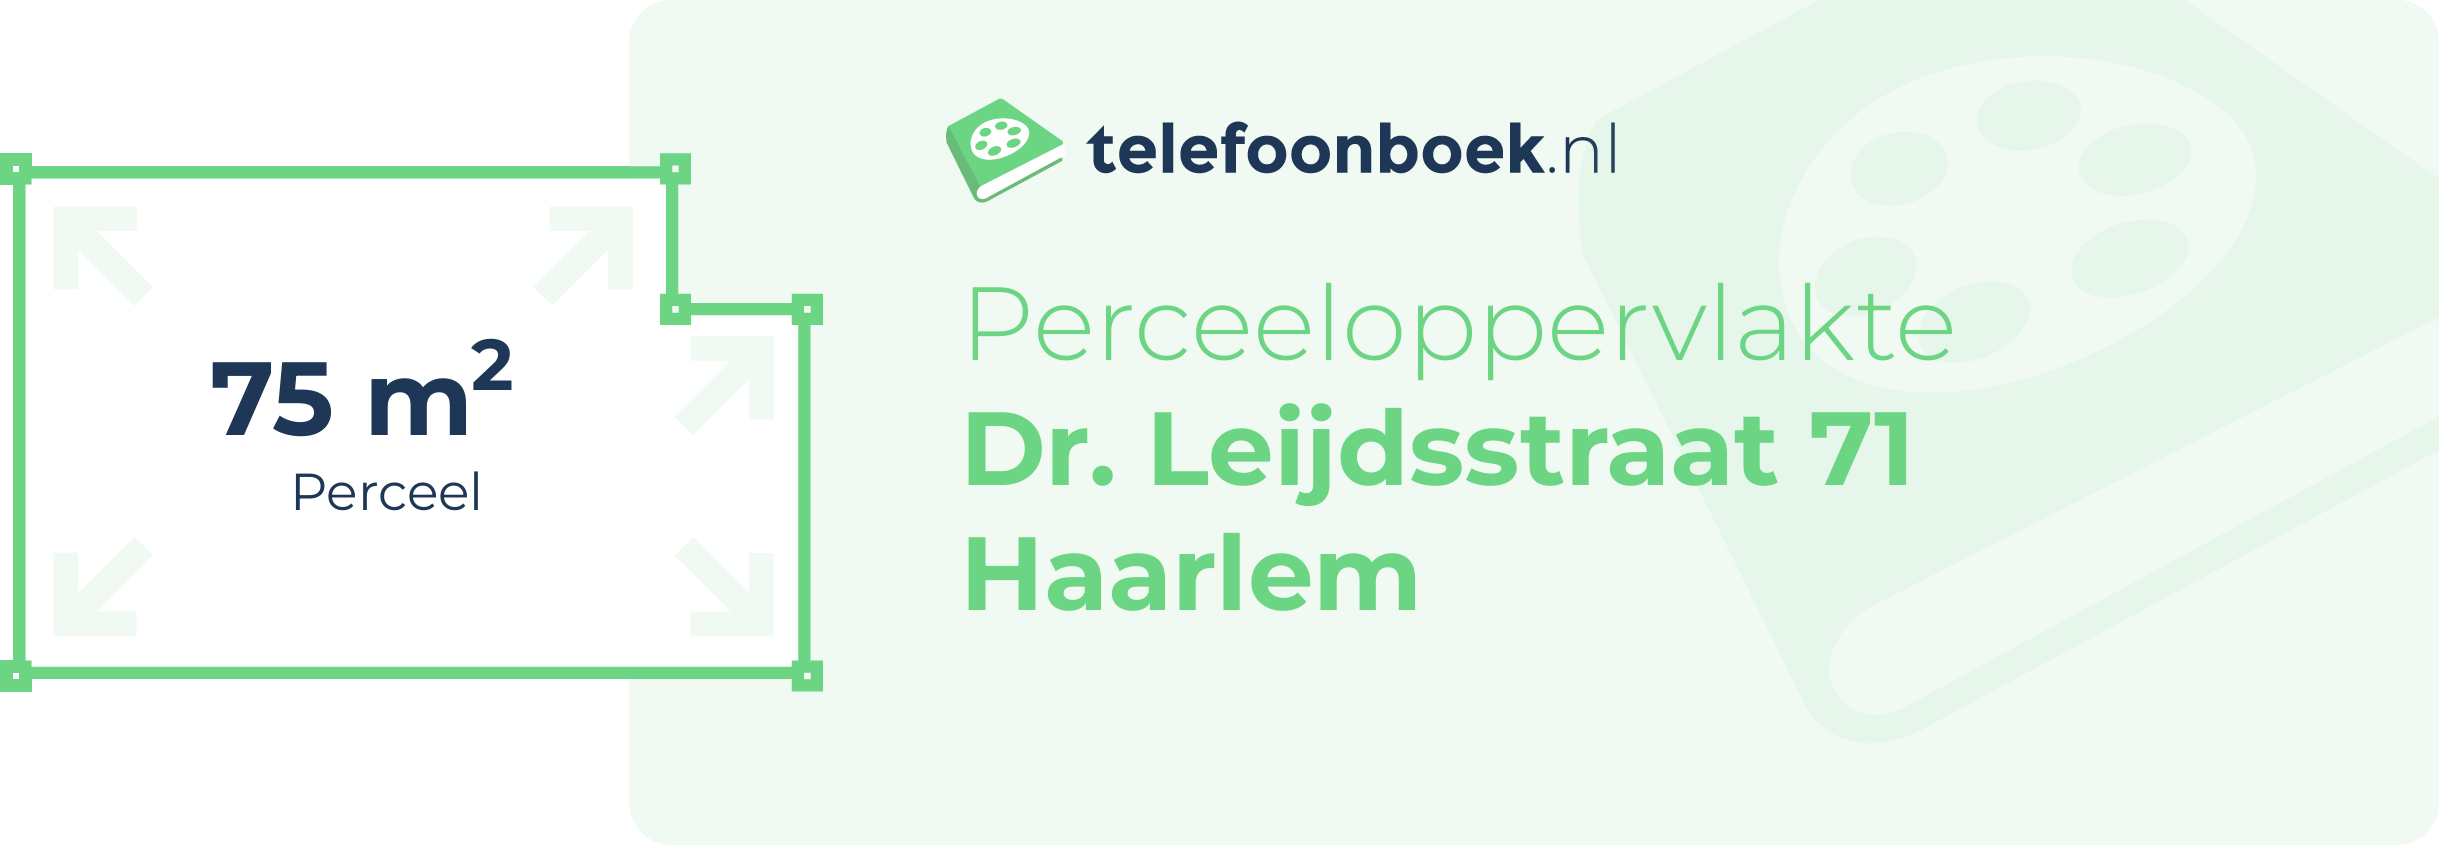 Perceeloppervlakte Dr. Leijdsstraat 71 Haarlem